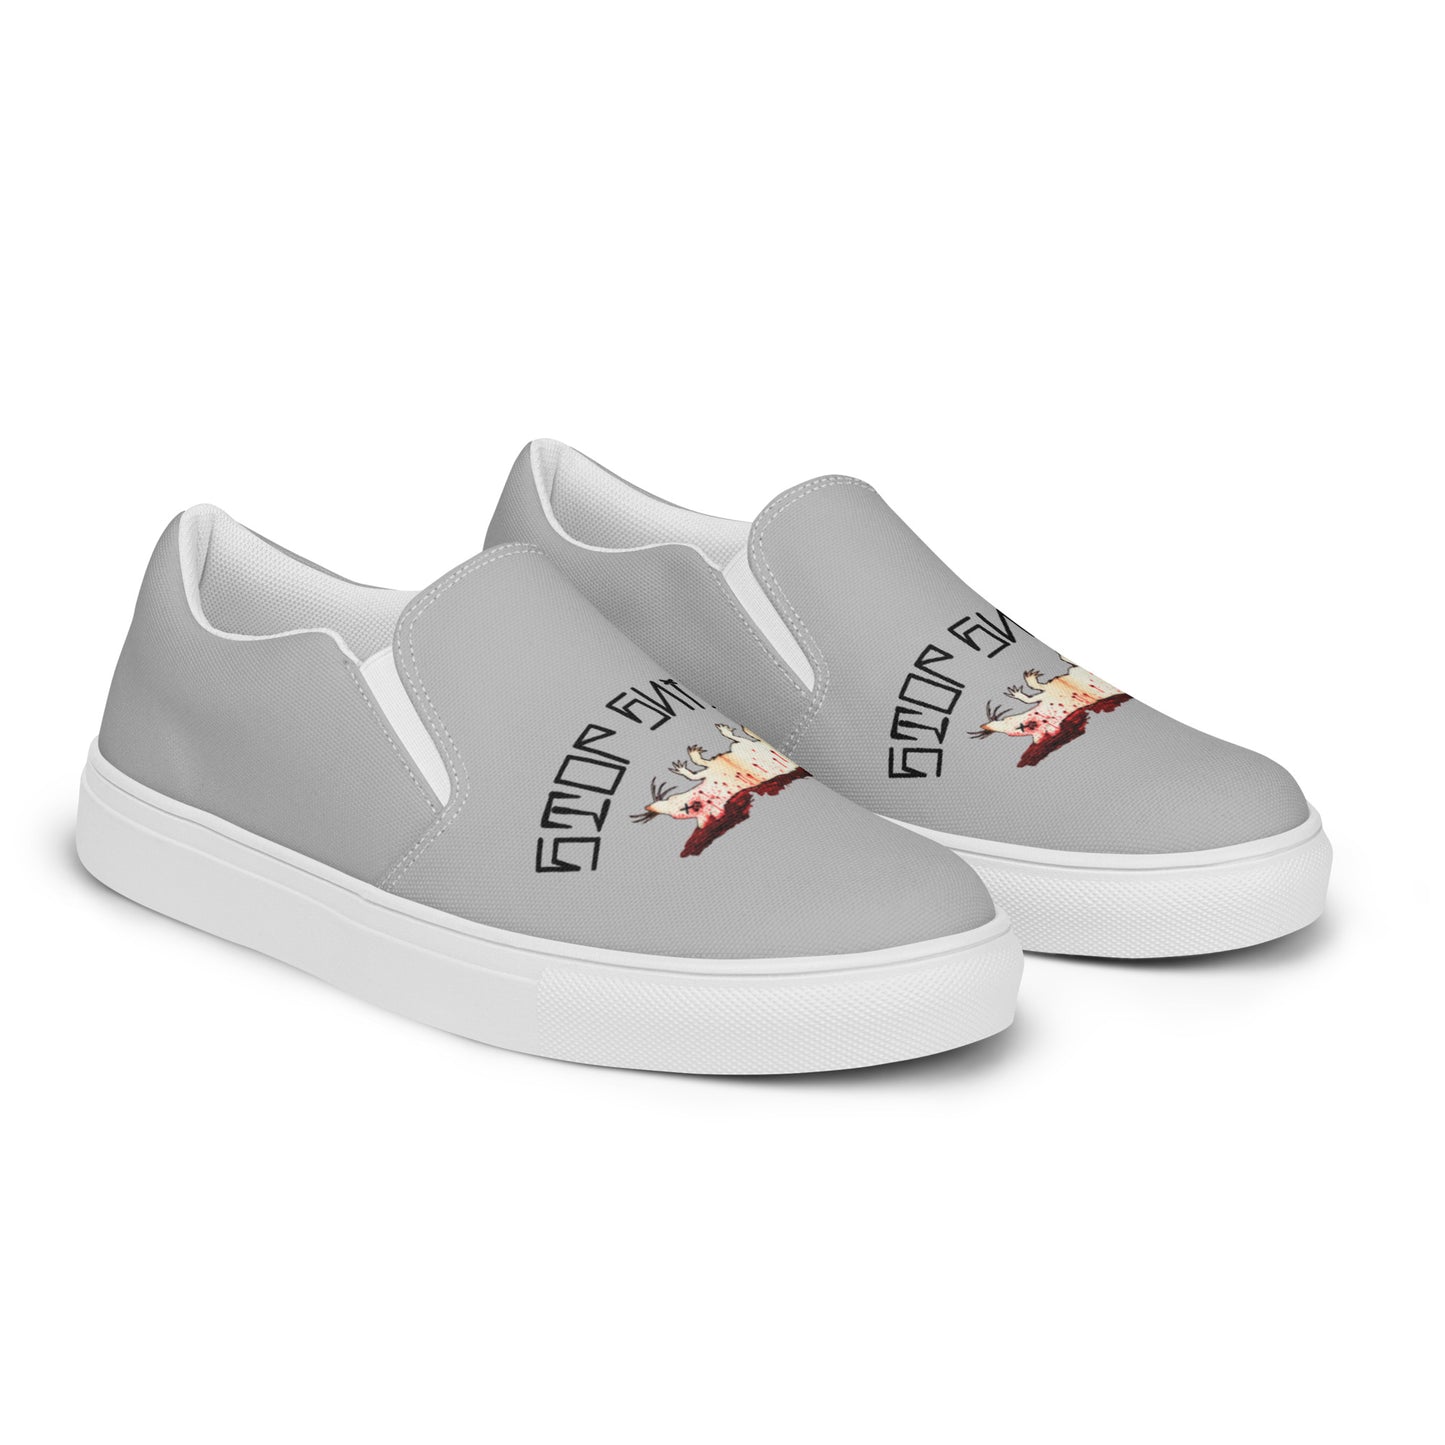 Men’s Fink Grey slip-on canvas shoes